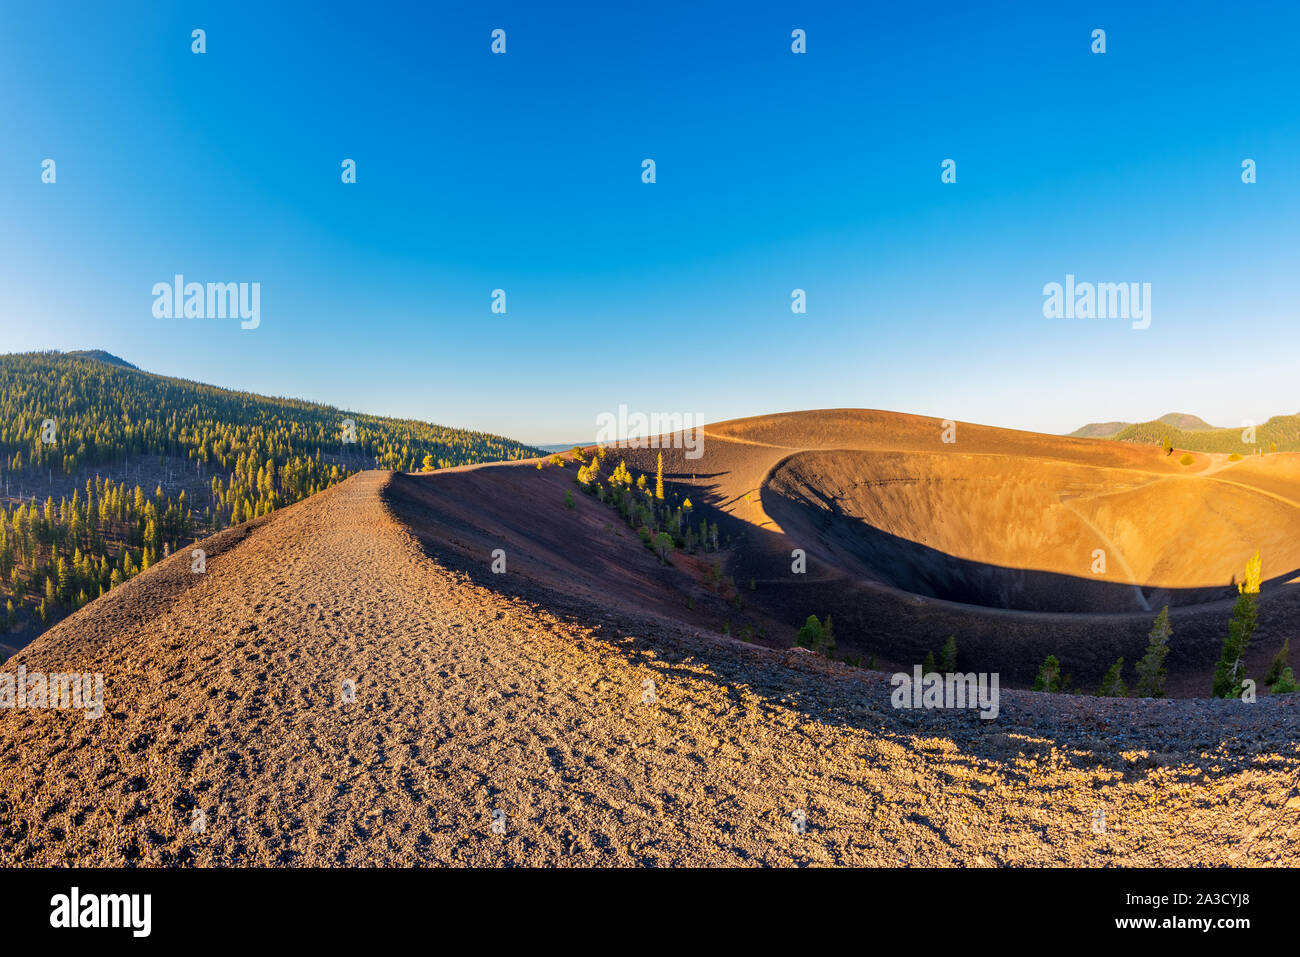 Sentier de gravier sur sommet de Lassen Volcanic National Park, California, USA autour de coucher du soleil. Capturé avec objectif Fisheye. Banque D'Images